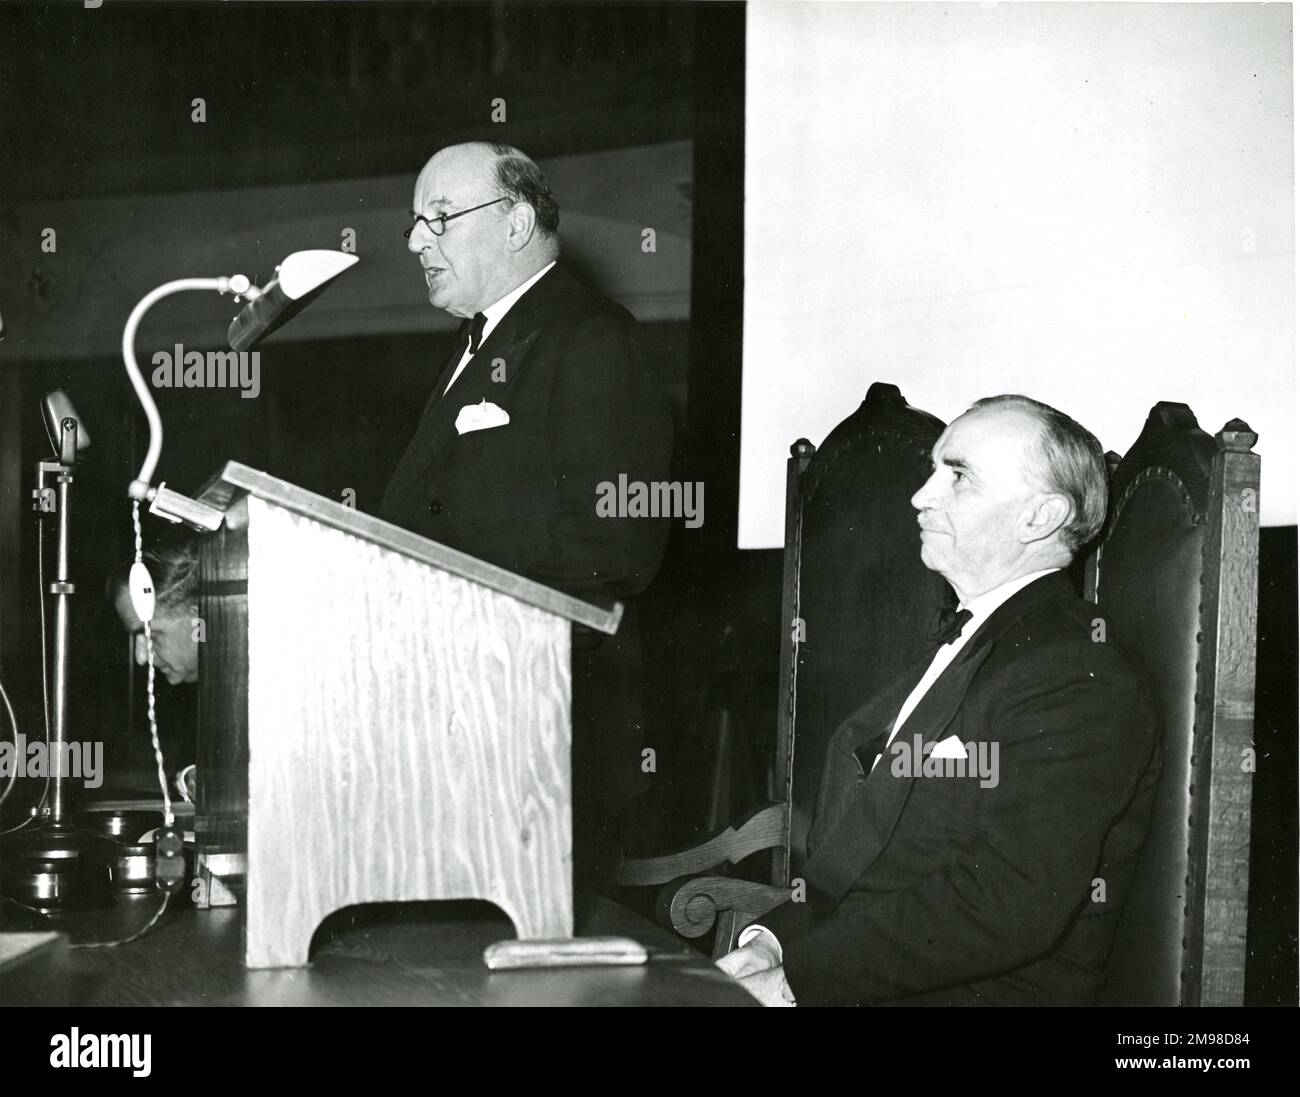 El cuarto discurso y recepción del Presidente de la Royal Aeronautical Society en el Assembly Hall, Church House, Westminster, Londres, el 10 de enero de 1957. Lord Brabazon de Tara, a la izquierda, presidió la reunión y E.T. Jones, CB, OBE, Meng, FRAeS, Presidente de la Real Sociedad Aeronáutica 1956-1957. Foto de stock